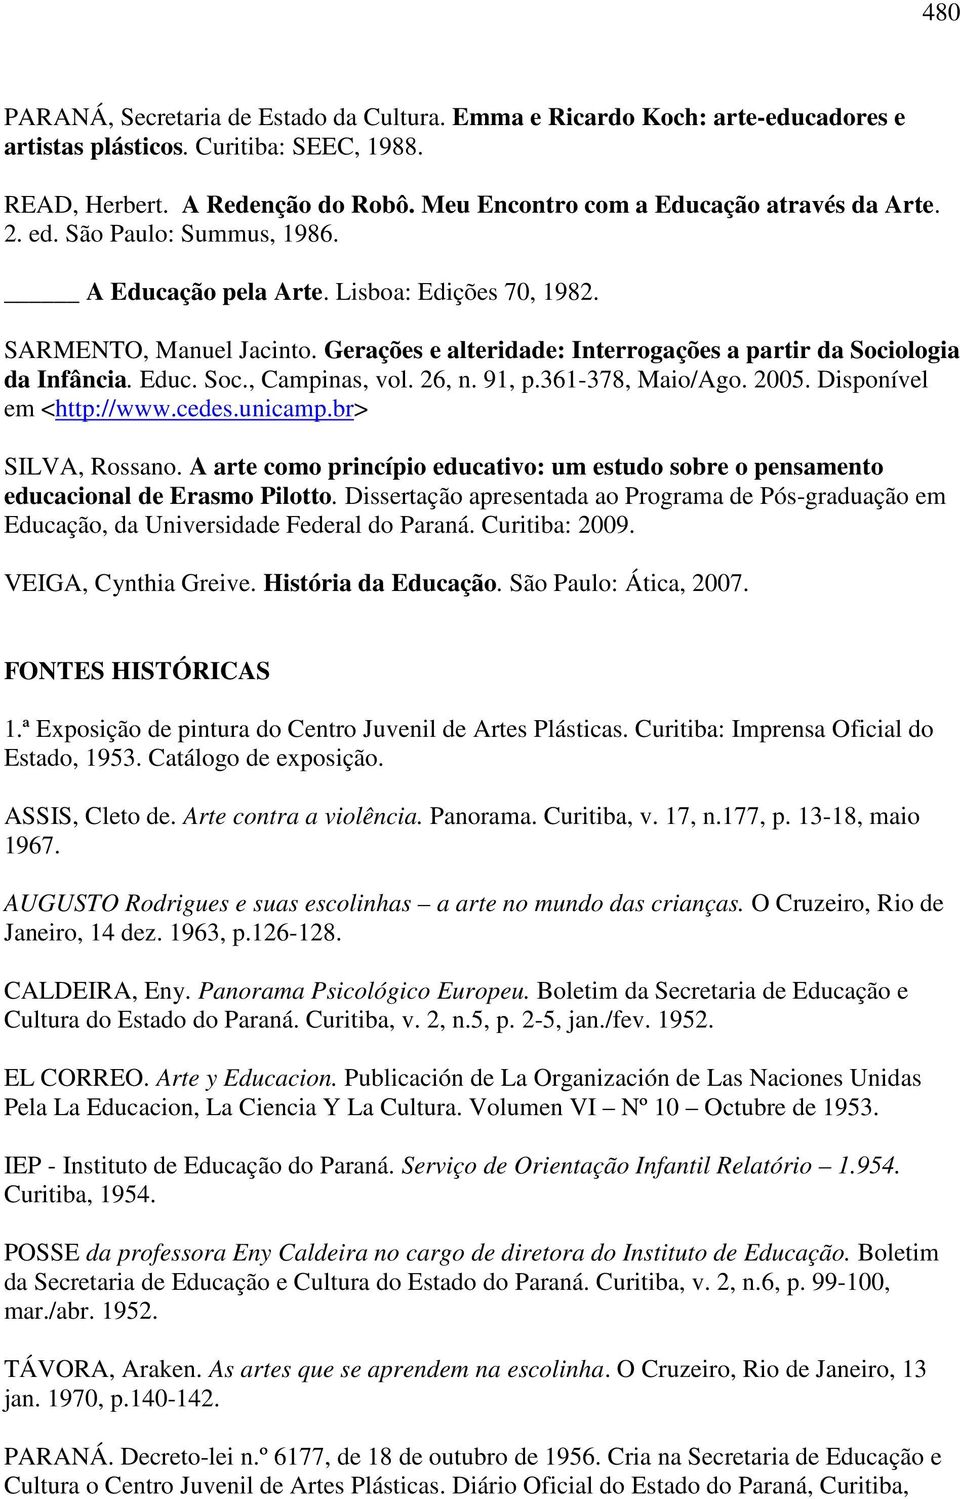 Gerações e alteridade: Interrogações a partir da Sociologia da Infância. Educ. Soc., Campinas, vol. 26, n. 91, p.361-378, Maio/Ago. 2005. Disponível em <http://www.cedes.unicamp.br> SILVA, Rossano.